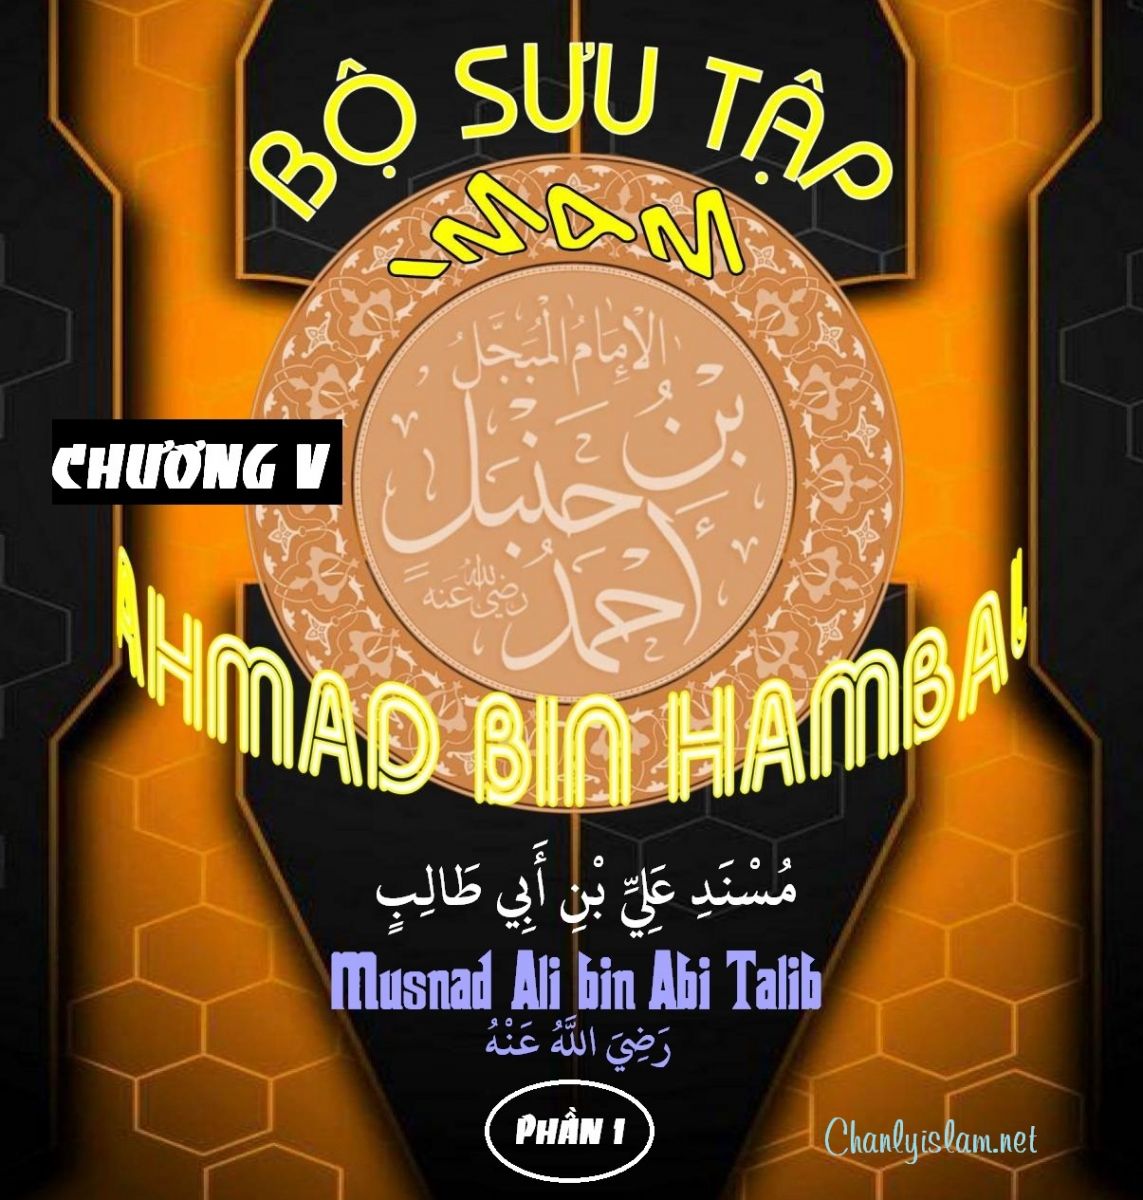 BỘ SƯU TẬP MUSNAD IMAM AHMAD IBN HANBAL - CHƯƠNG V - MUSNAD ALI BIN ABI TALIB - PHẦN 1